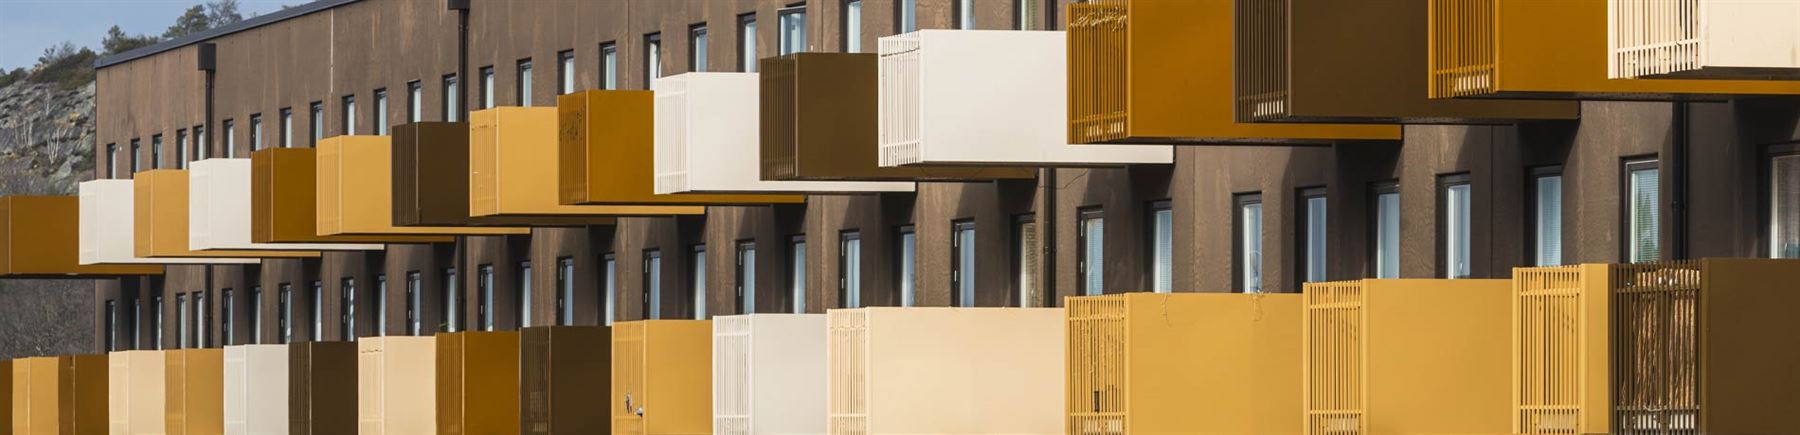 Ett fasad på ett bostadshus med balkonger i olika färger.